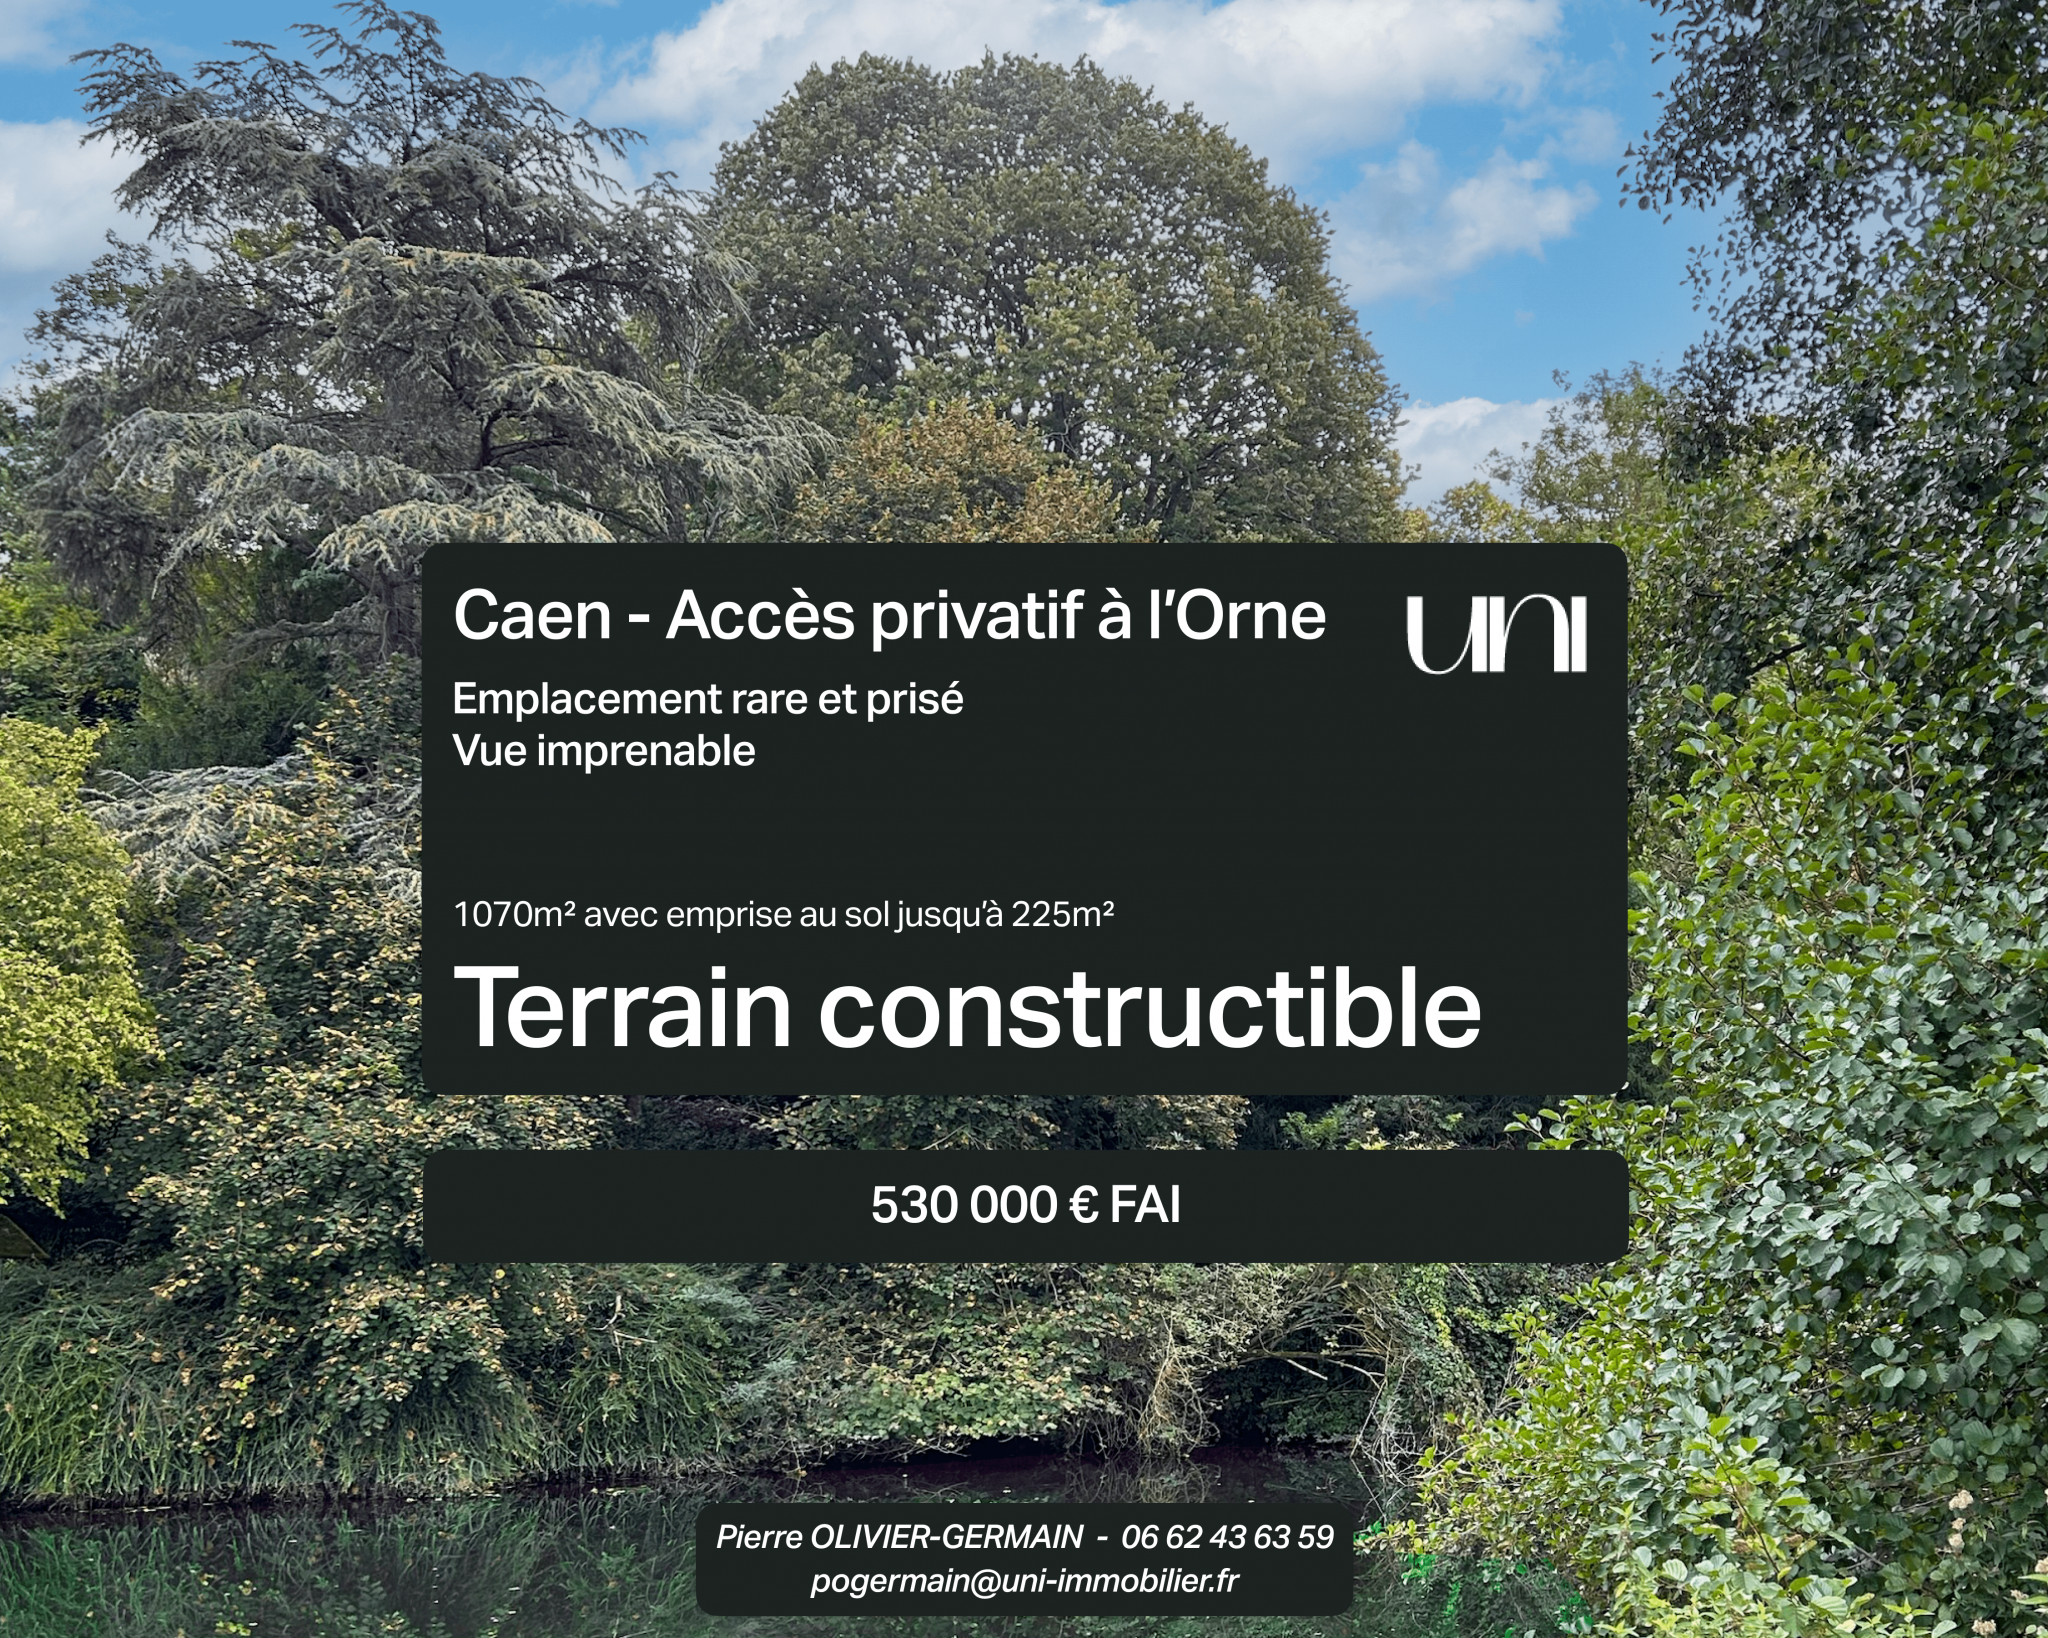 Terrain constructible de 1070m2 avec accès privatif à l’Orne